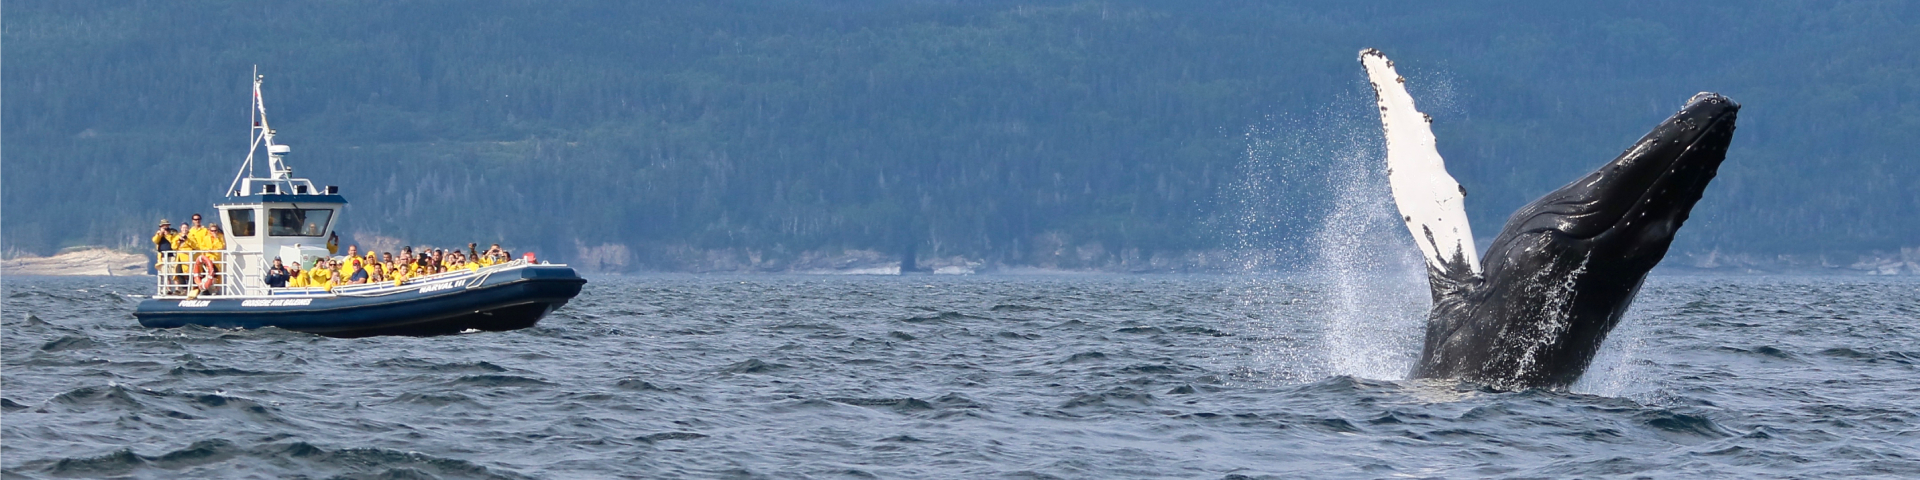 Une baleine à bosse fait du breaching devant un zodiac plein de passagers. 